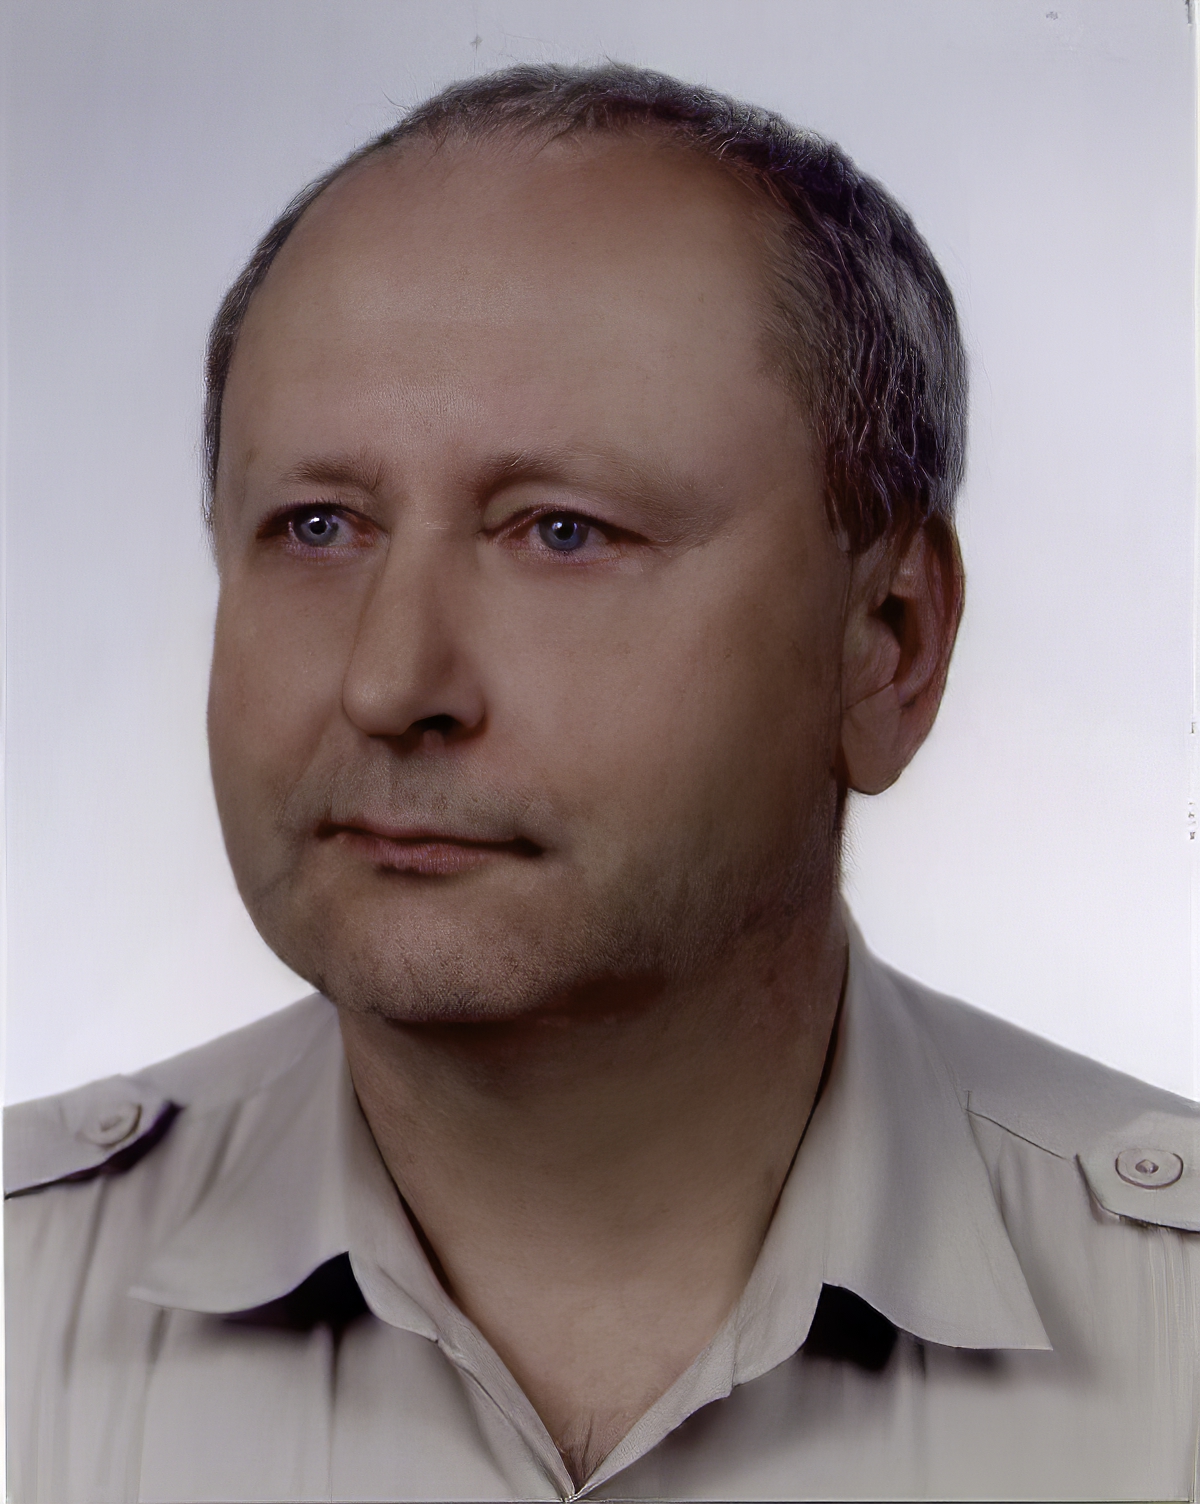 Dr Jan Pajak - zdjęcie dla dowodu osobistego wykonane 19 lipca 2004 roku